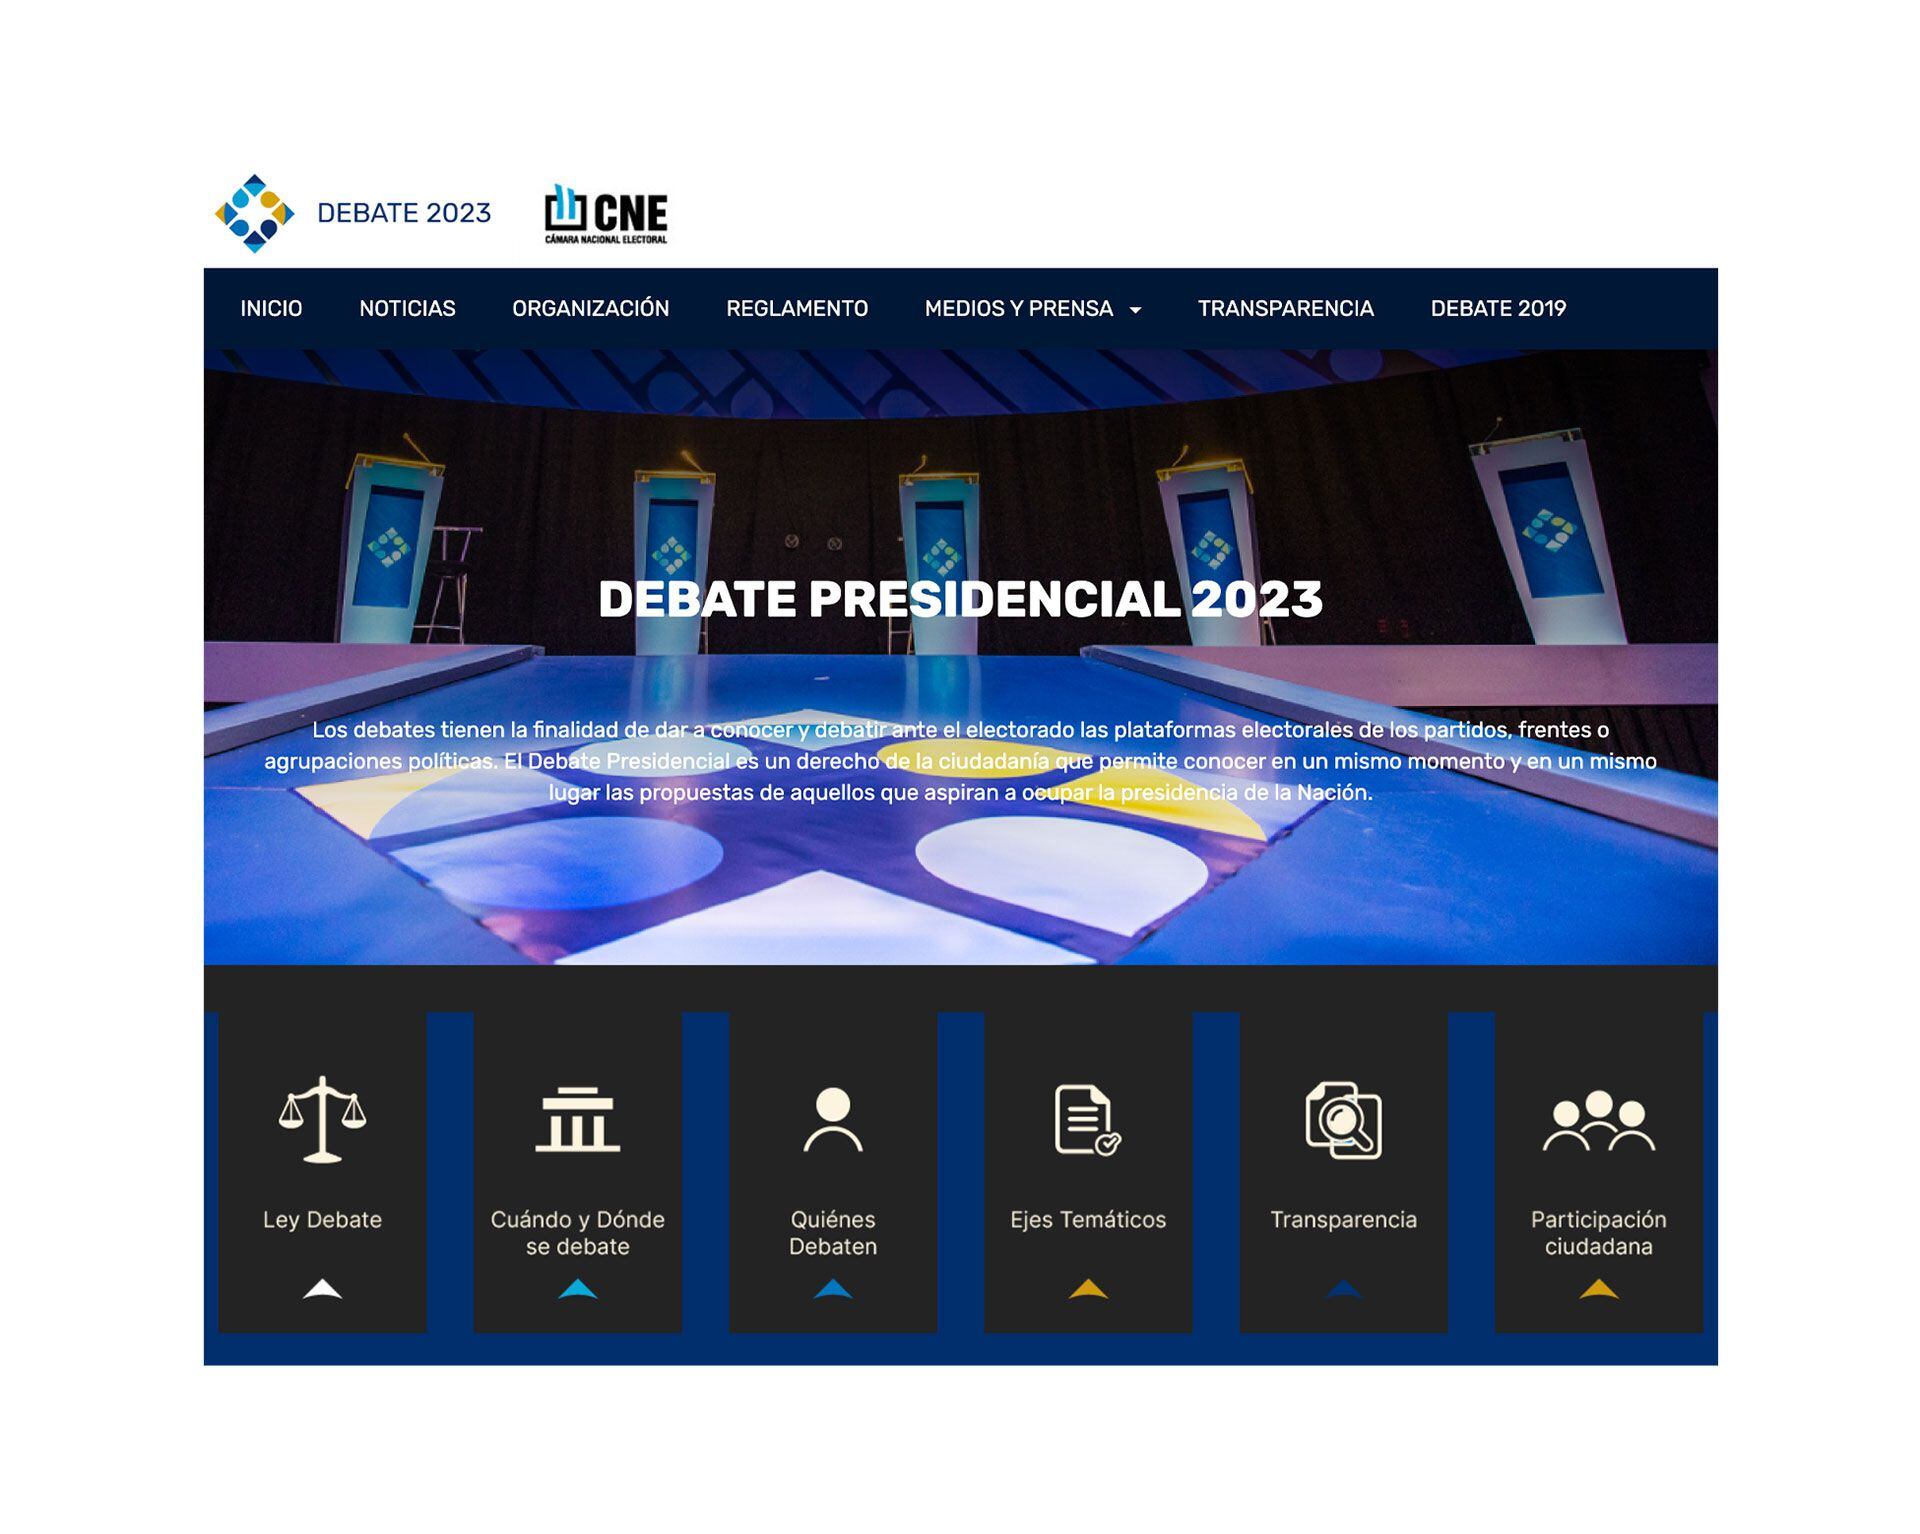 La Cámara Electoral habilitó un sitio web con la información sobre el Debate 2023: debate.electoral.gob.ar